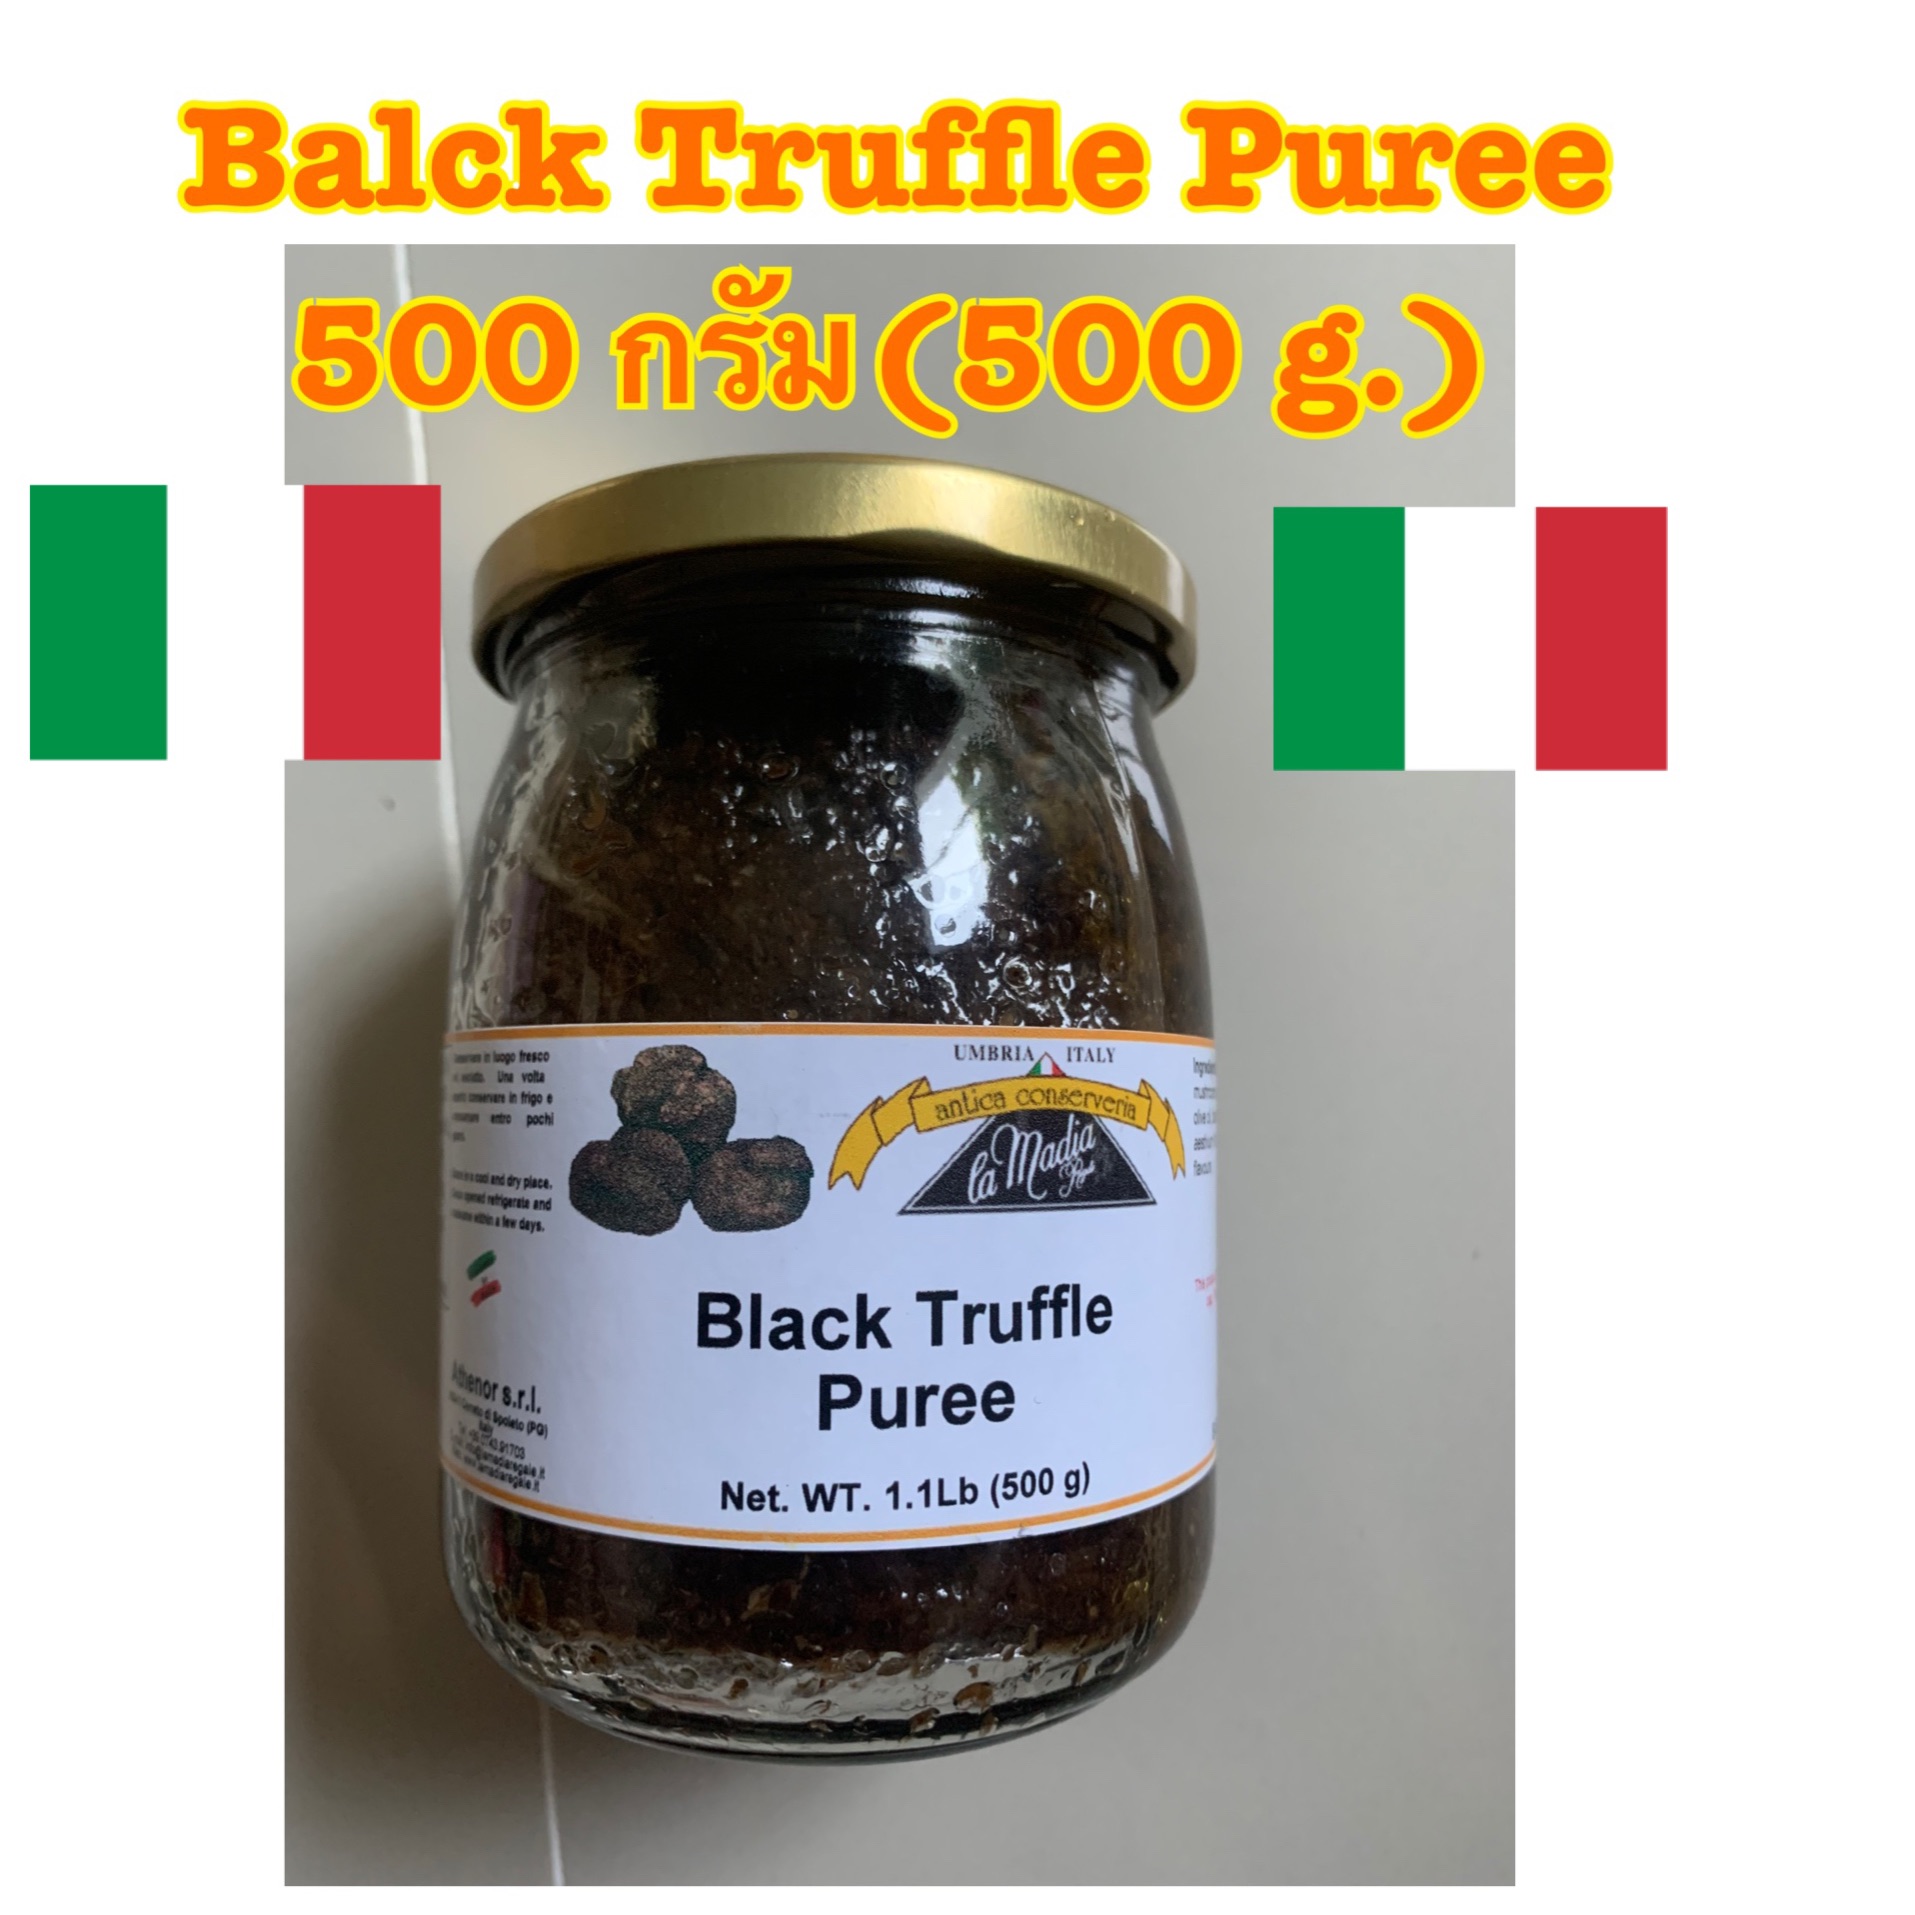 Black Truffle puree ทรัฟเฟิลดำเข้มข้น แบล็ค ทรัฟเฟิล พูรี (ซอสสำหรับทำสปาเกตตี) นำเข้าจากอิตาลีปริมาณ 500 กรัม